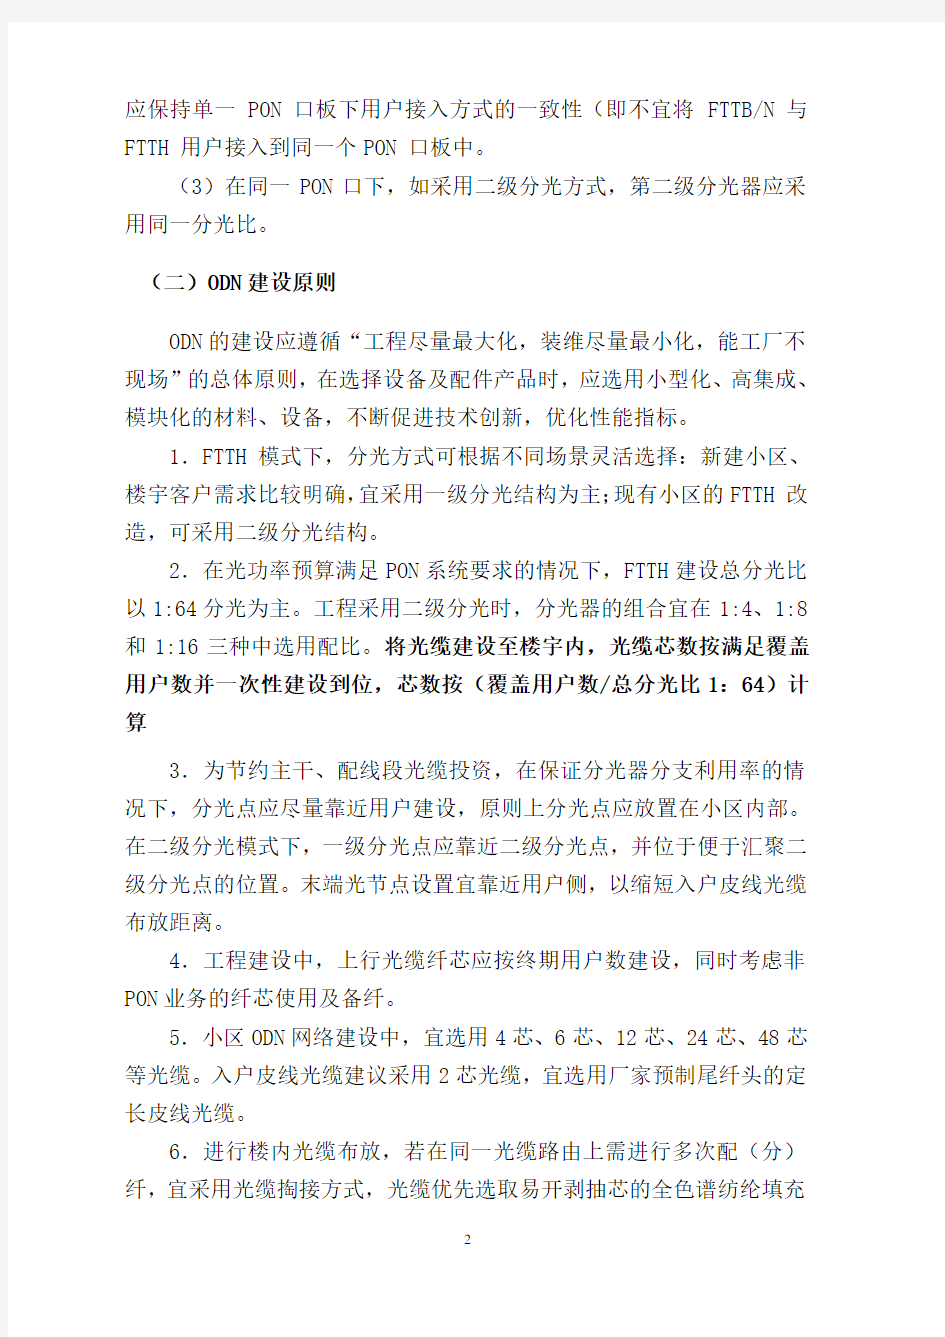 中国电信广东公司FTTH建设指导原则20101122(公文形式)